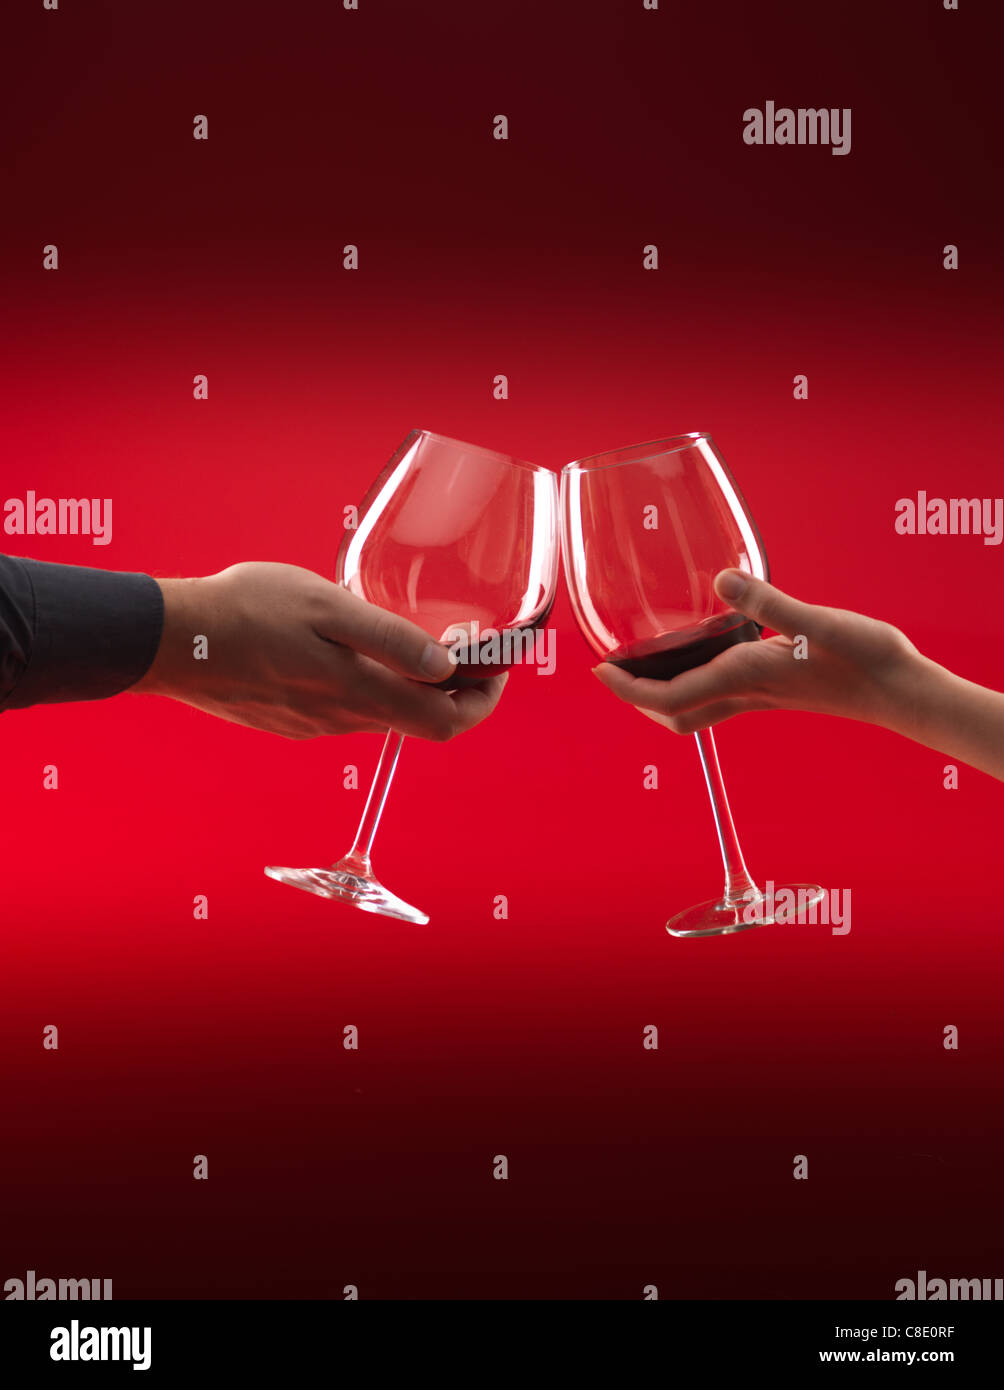 Les mains de l'homme et de la femme tenant des verres de vin rouge, grillage, sur fond rouge Banque D'Images